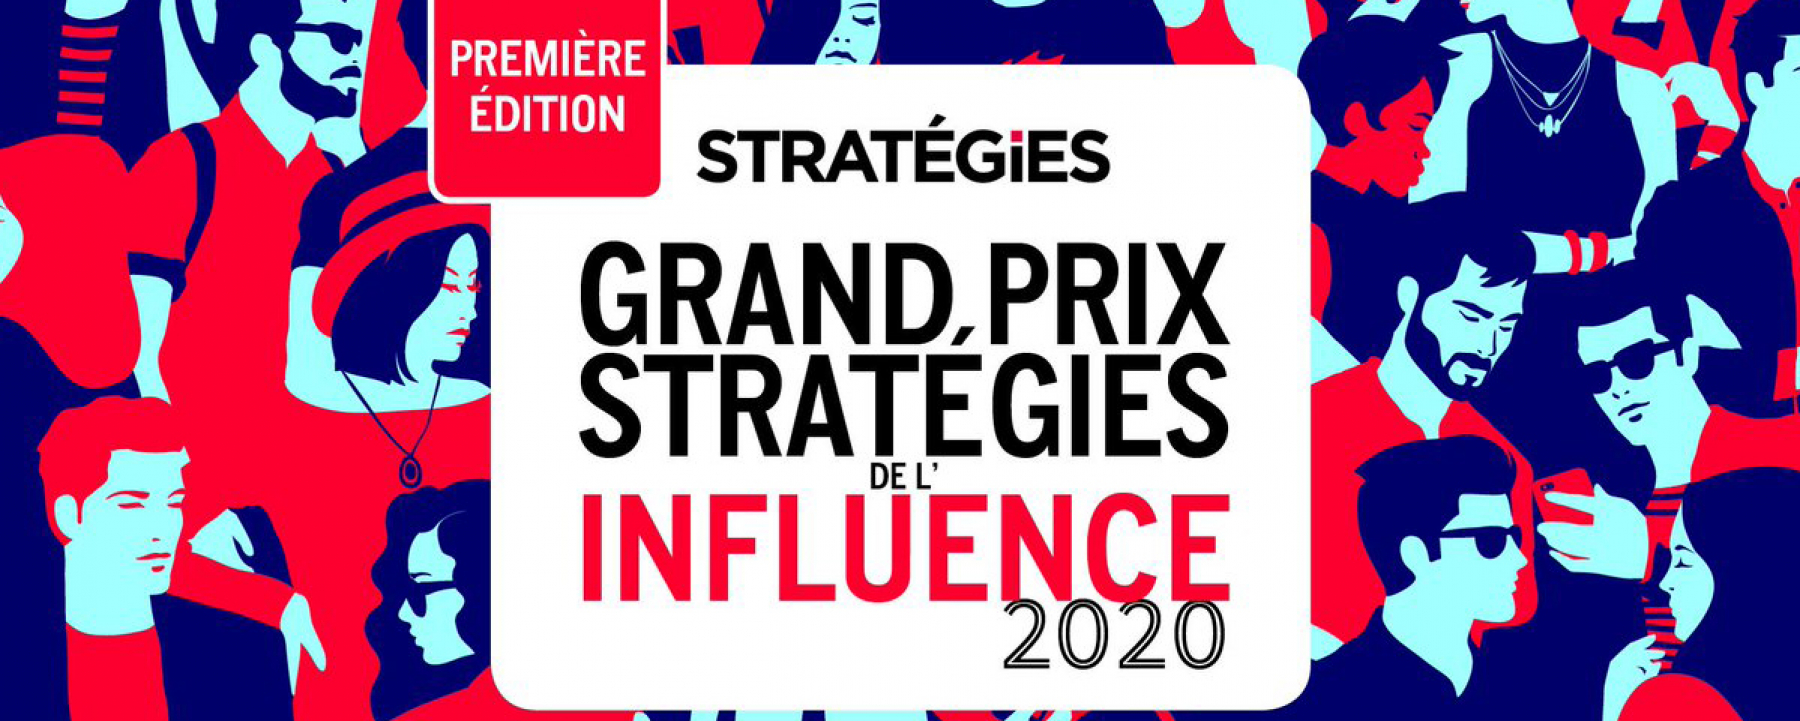 Grand Prix Stratégies de l'Influence 2020 - 1ère Édition, le 23 mars 2020